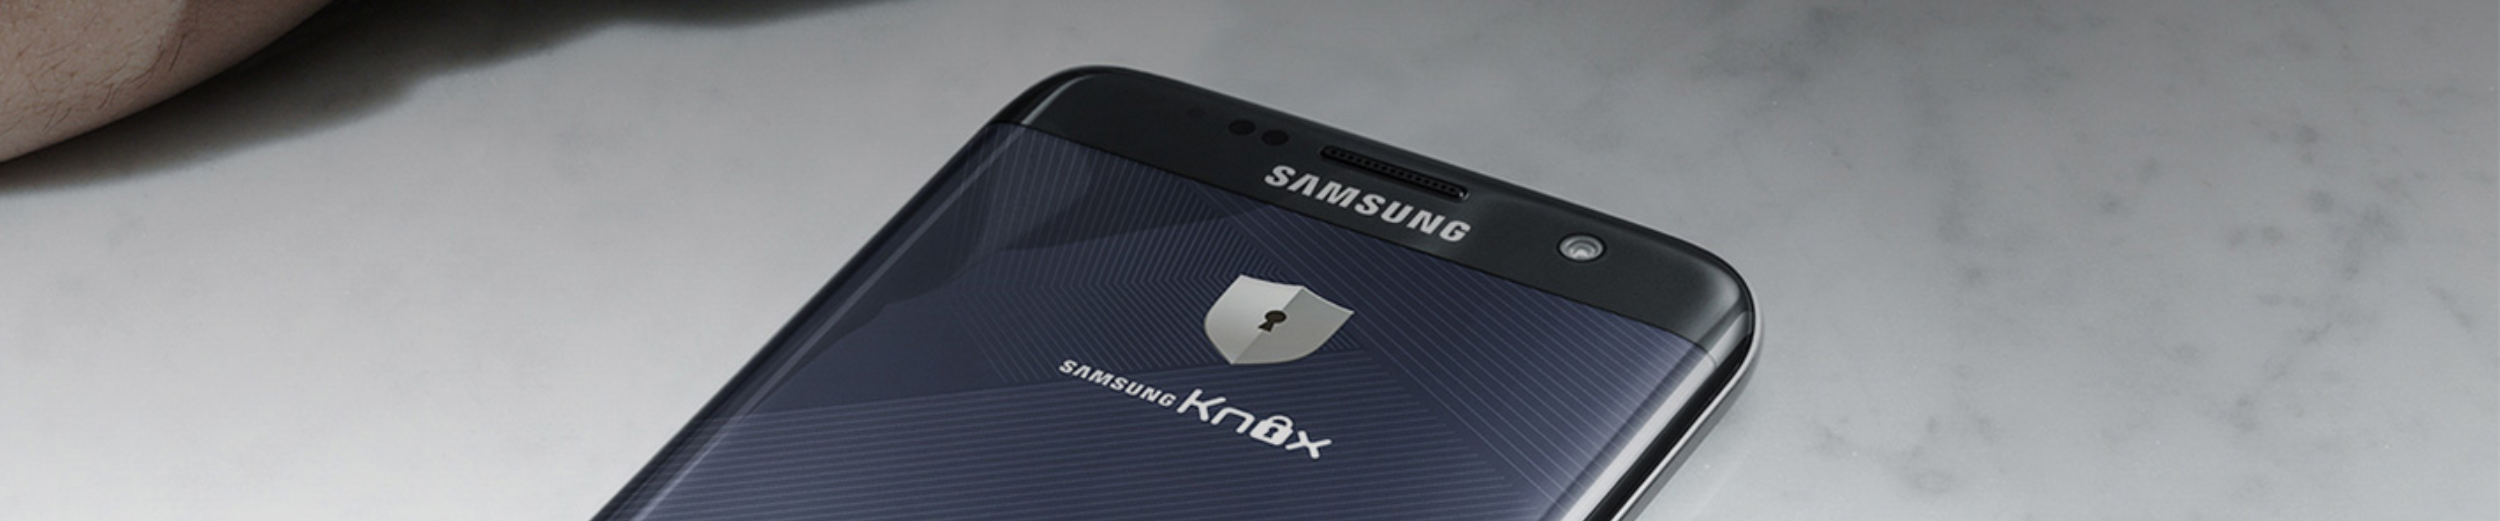 NIS2: breng je security op orde met Samsung Knox